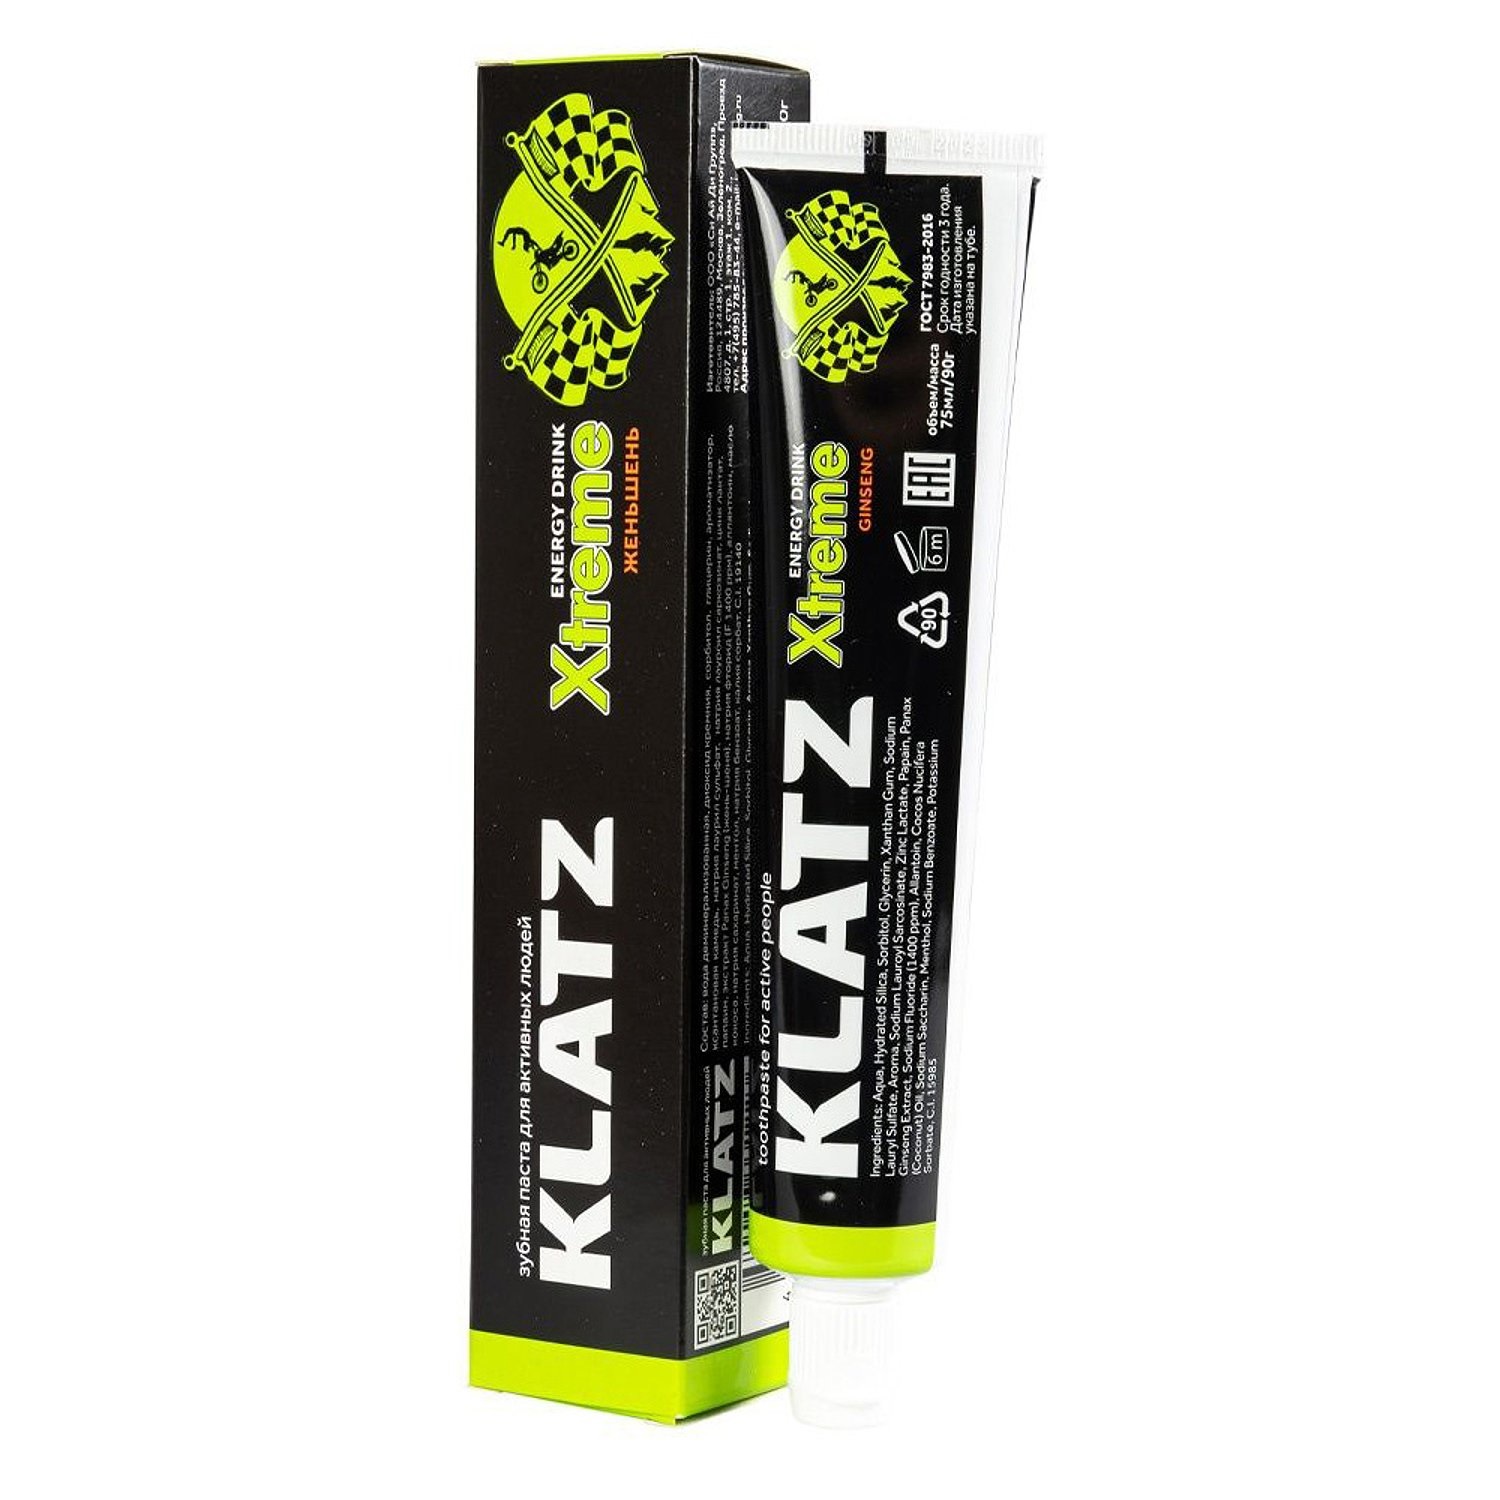 Зубная паста KLATZ X-treme Energy Drink для активных людей, женьшень, 75 мл klatz паста зубная для активных людей гуарана x treme energy drink 75 мл